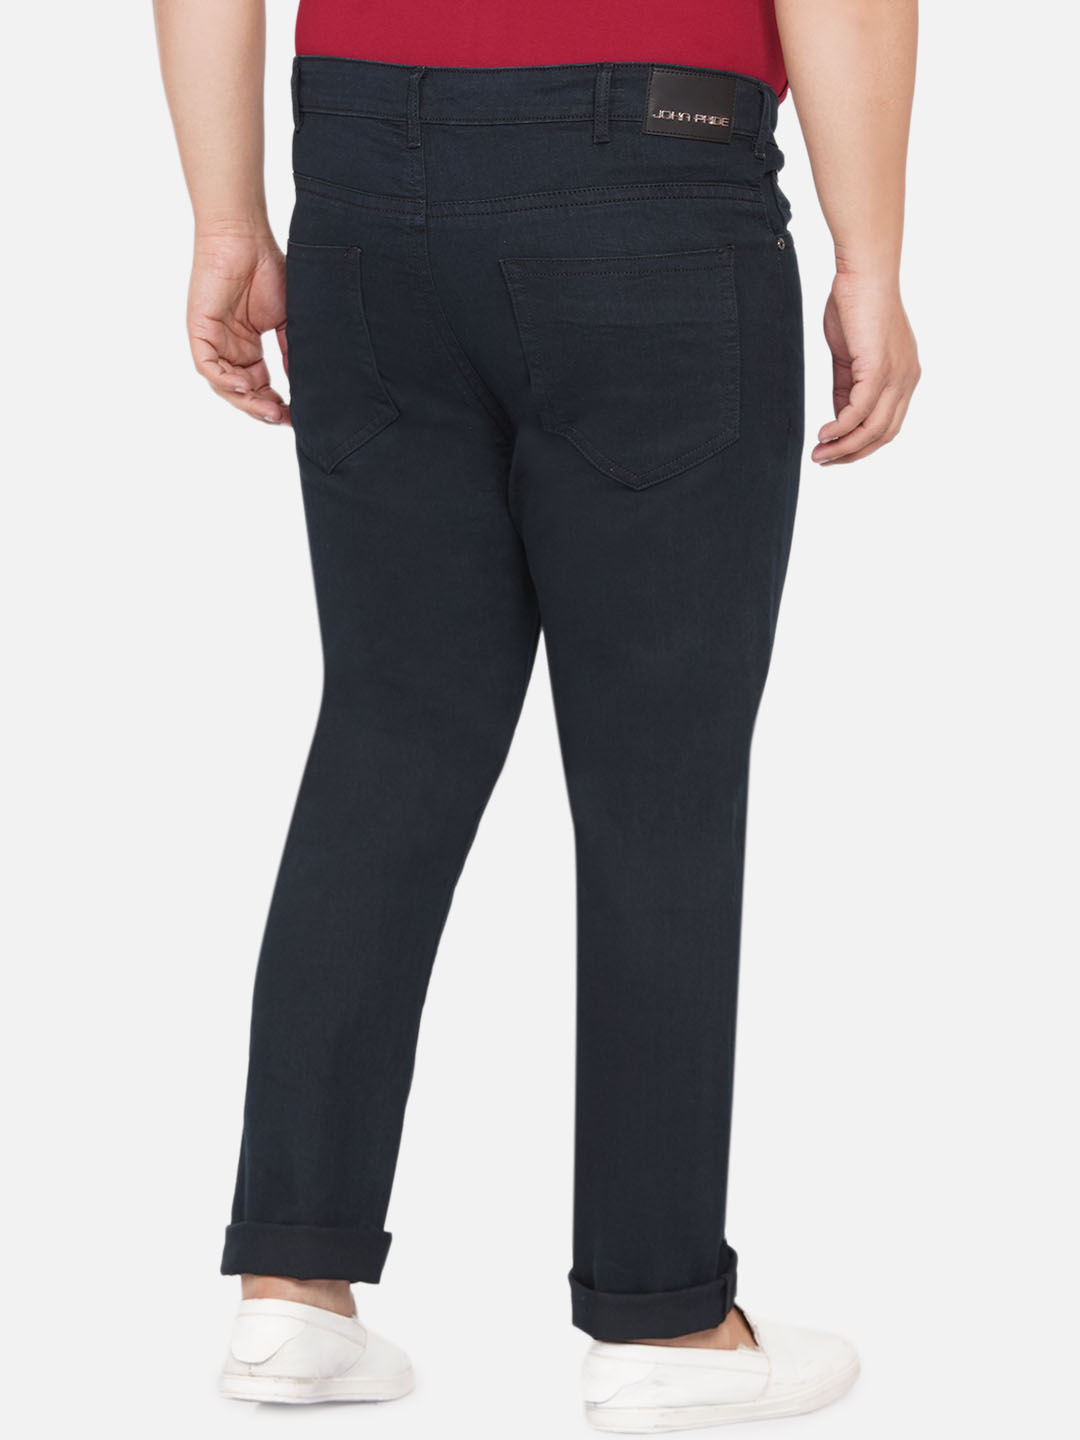 bottomwear/jeans/JPJ12258/jpj12258-5.jpg